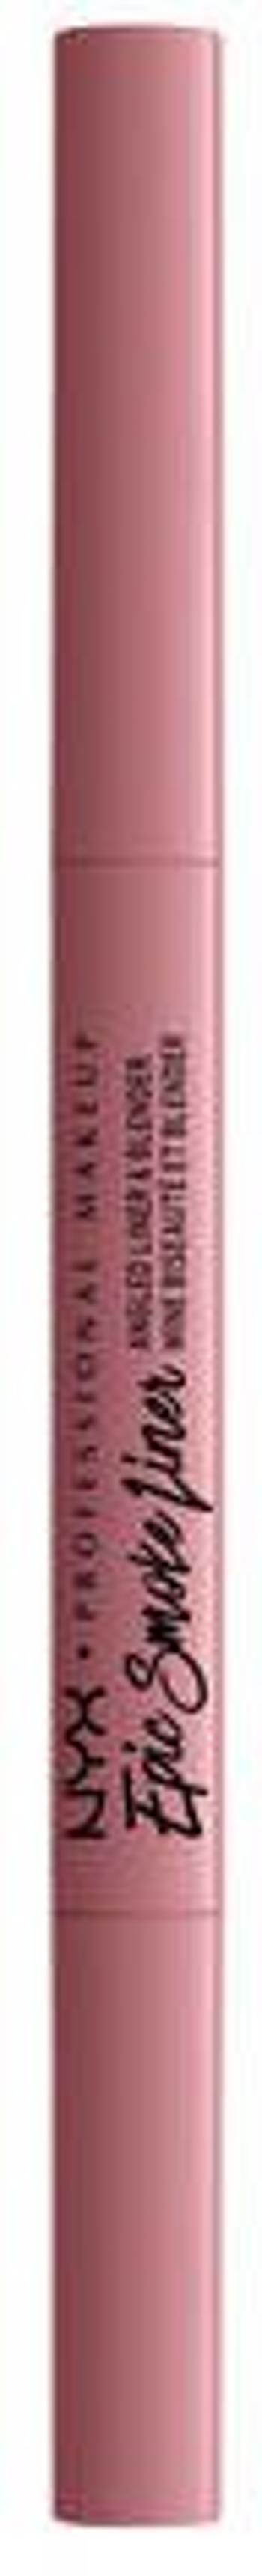 NYX Professional Makeup Epic Smoke Liner dlouhotrvající tužka na oči - 03 Mauve Grid 0.17 g